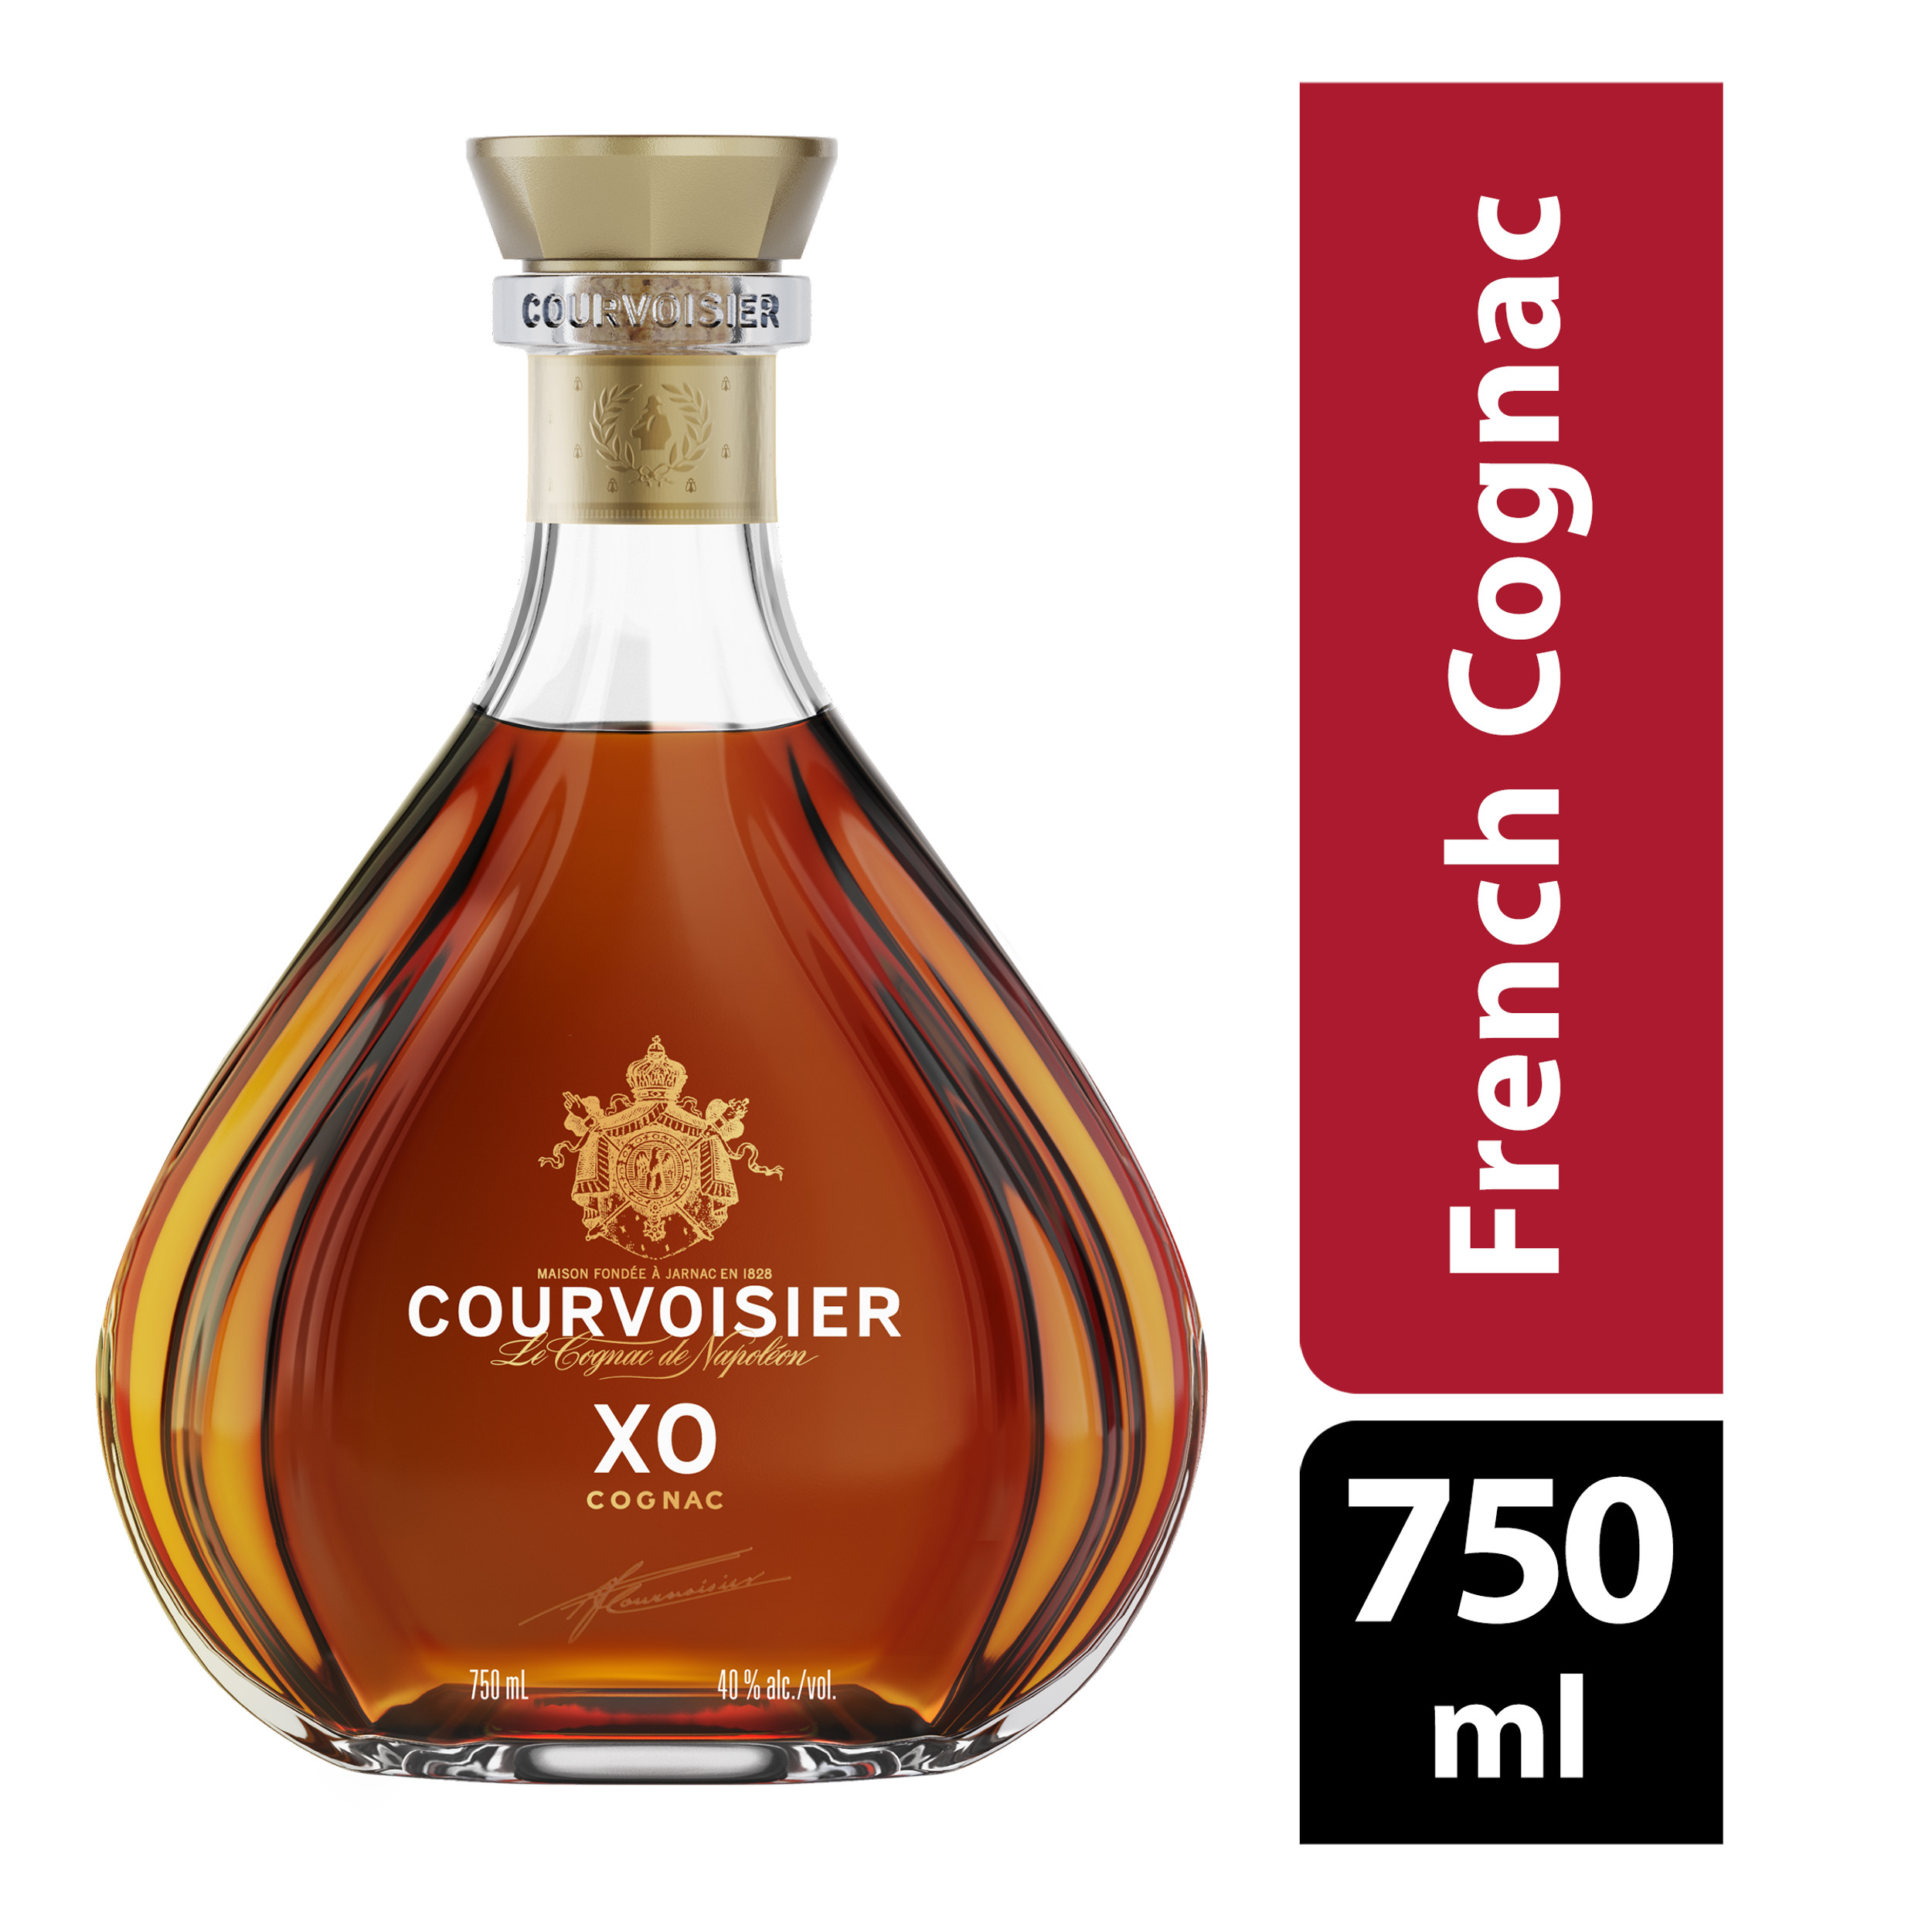 Courvoisier XO Cognac, 750.0 ml - image 2 of 4